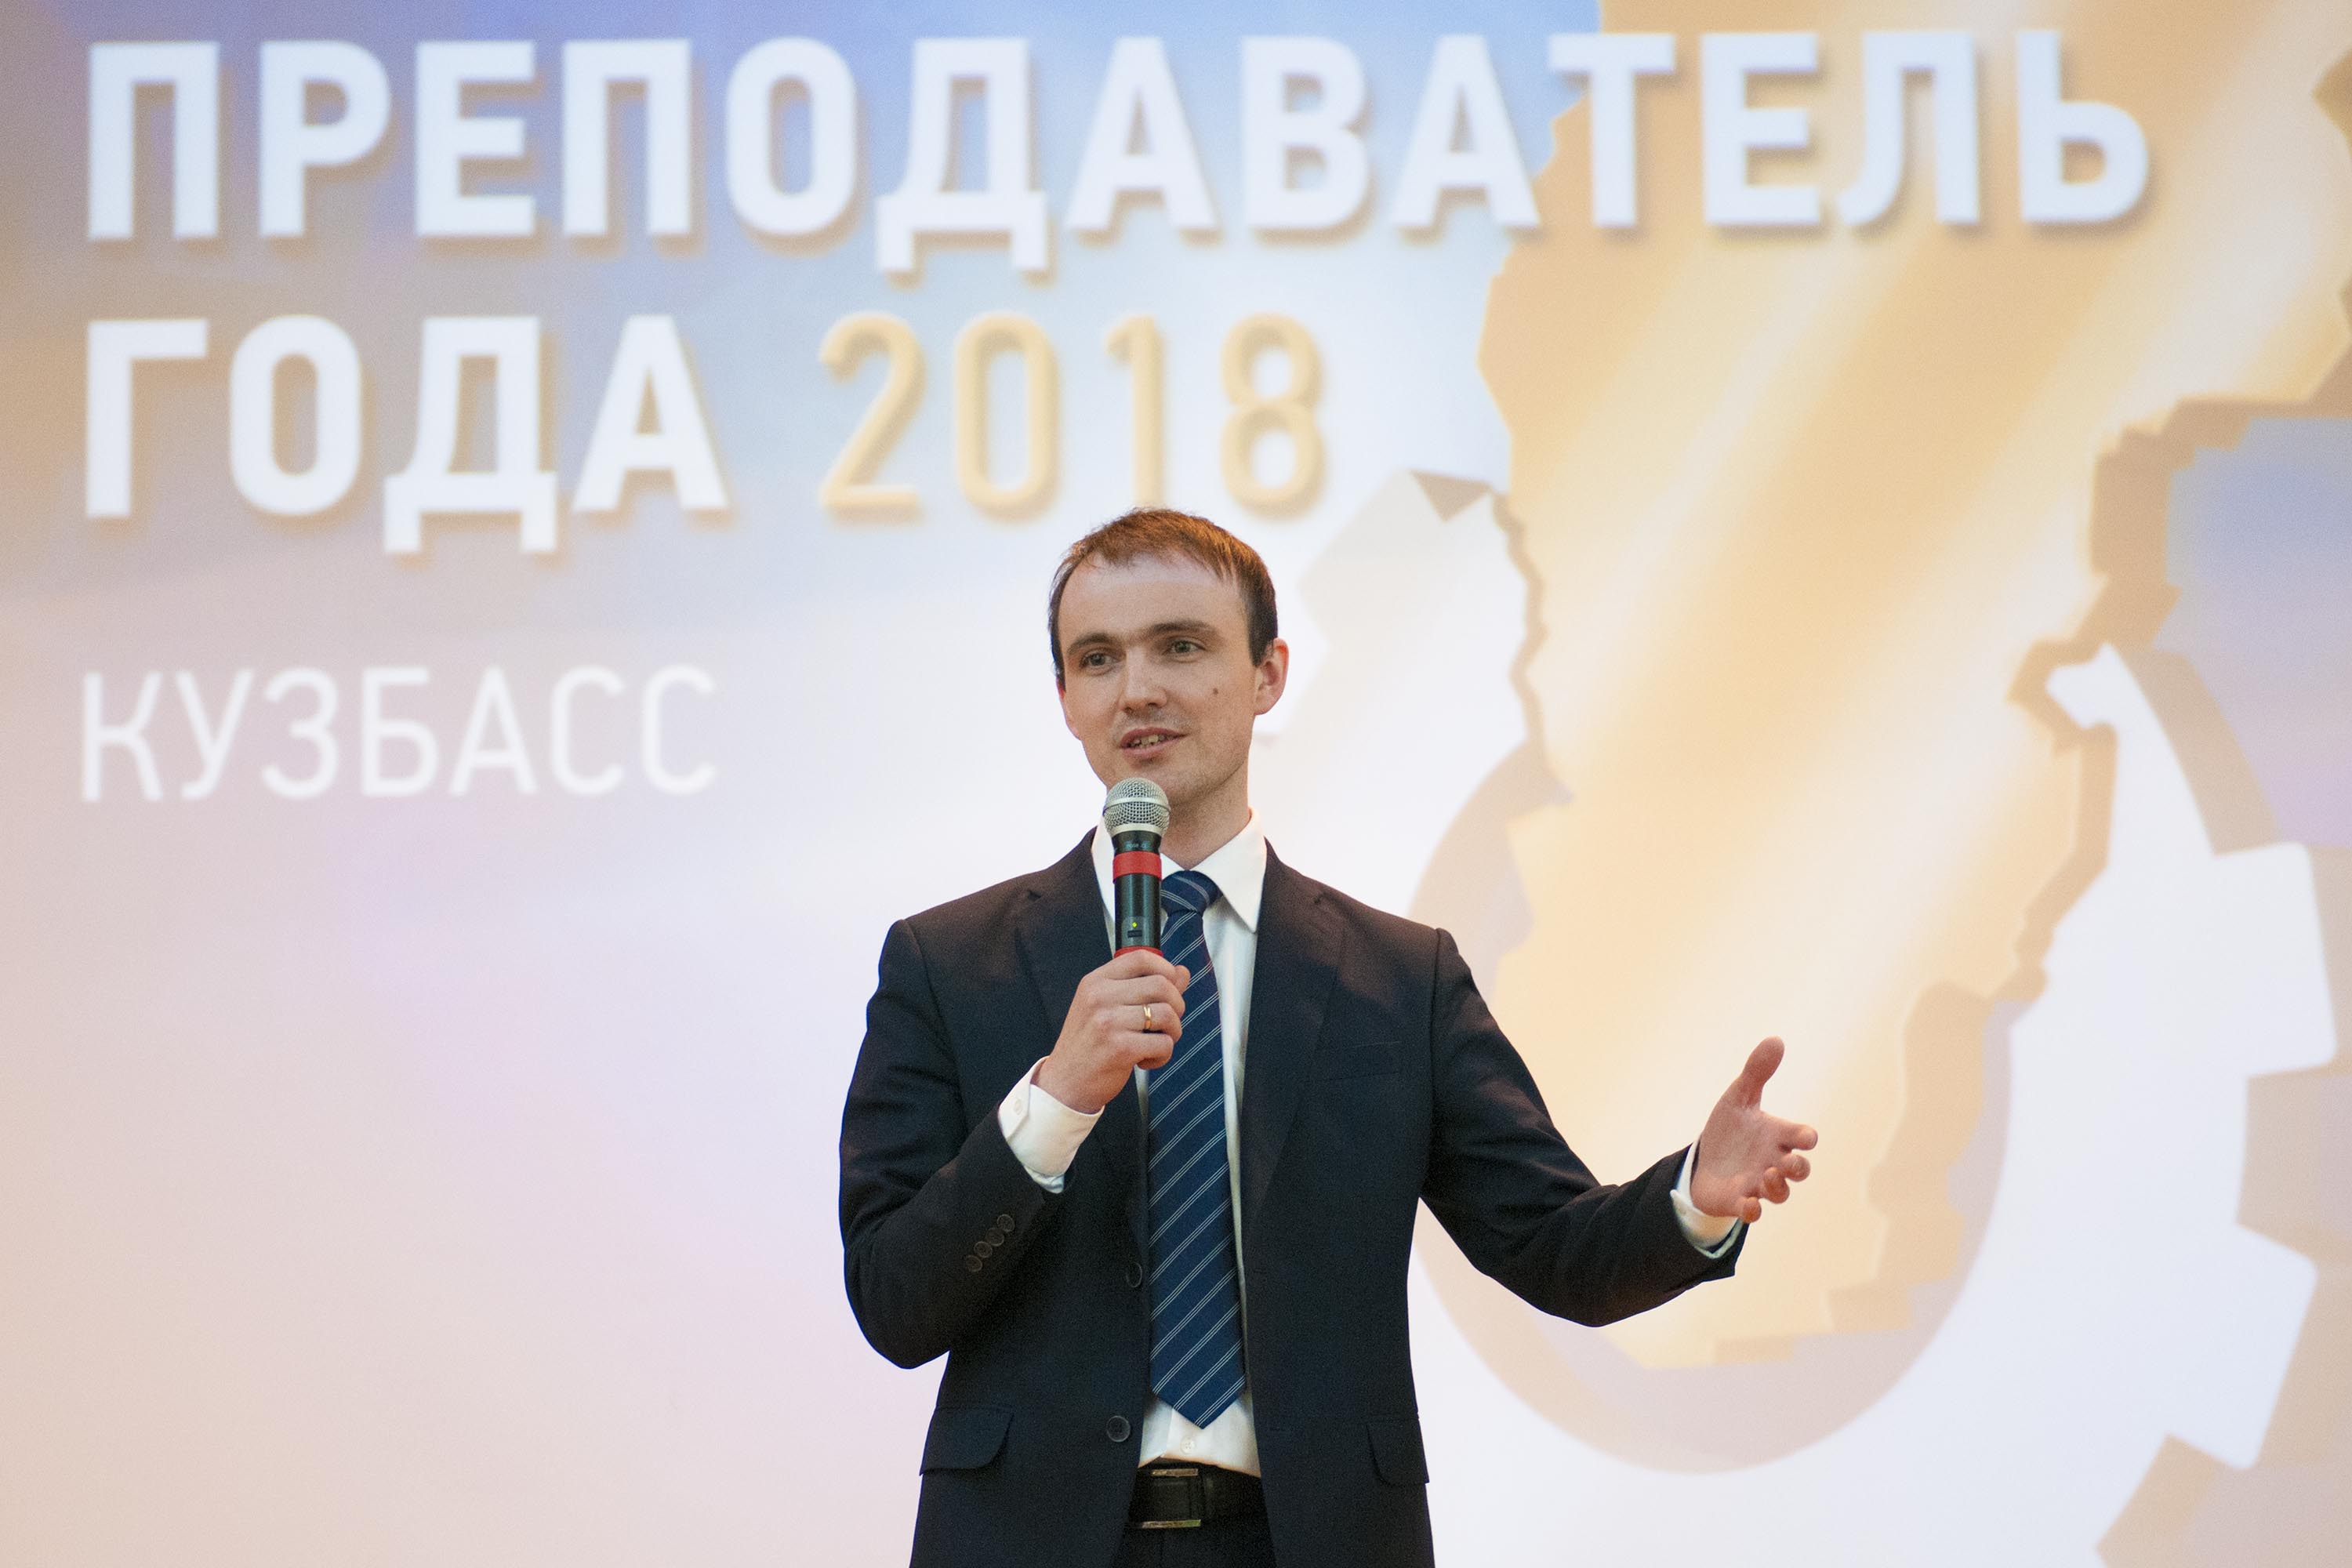 В Кузбассе состоится торжественная церемония закрытия XIII Областного конкурса «Преподаватель года – 2018»